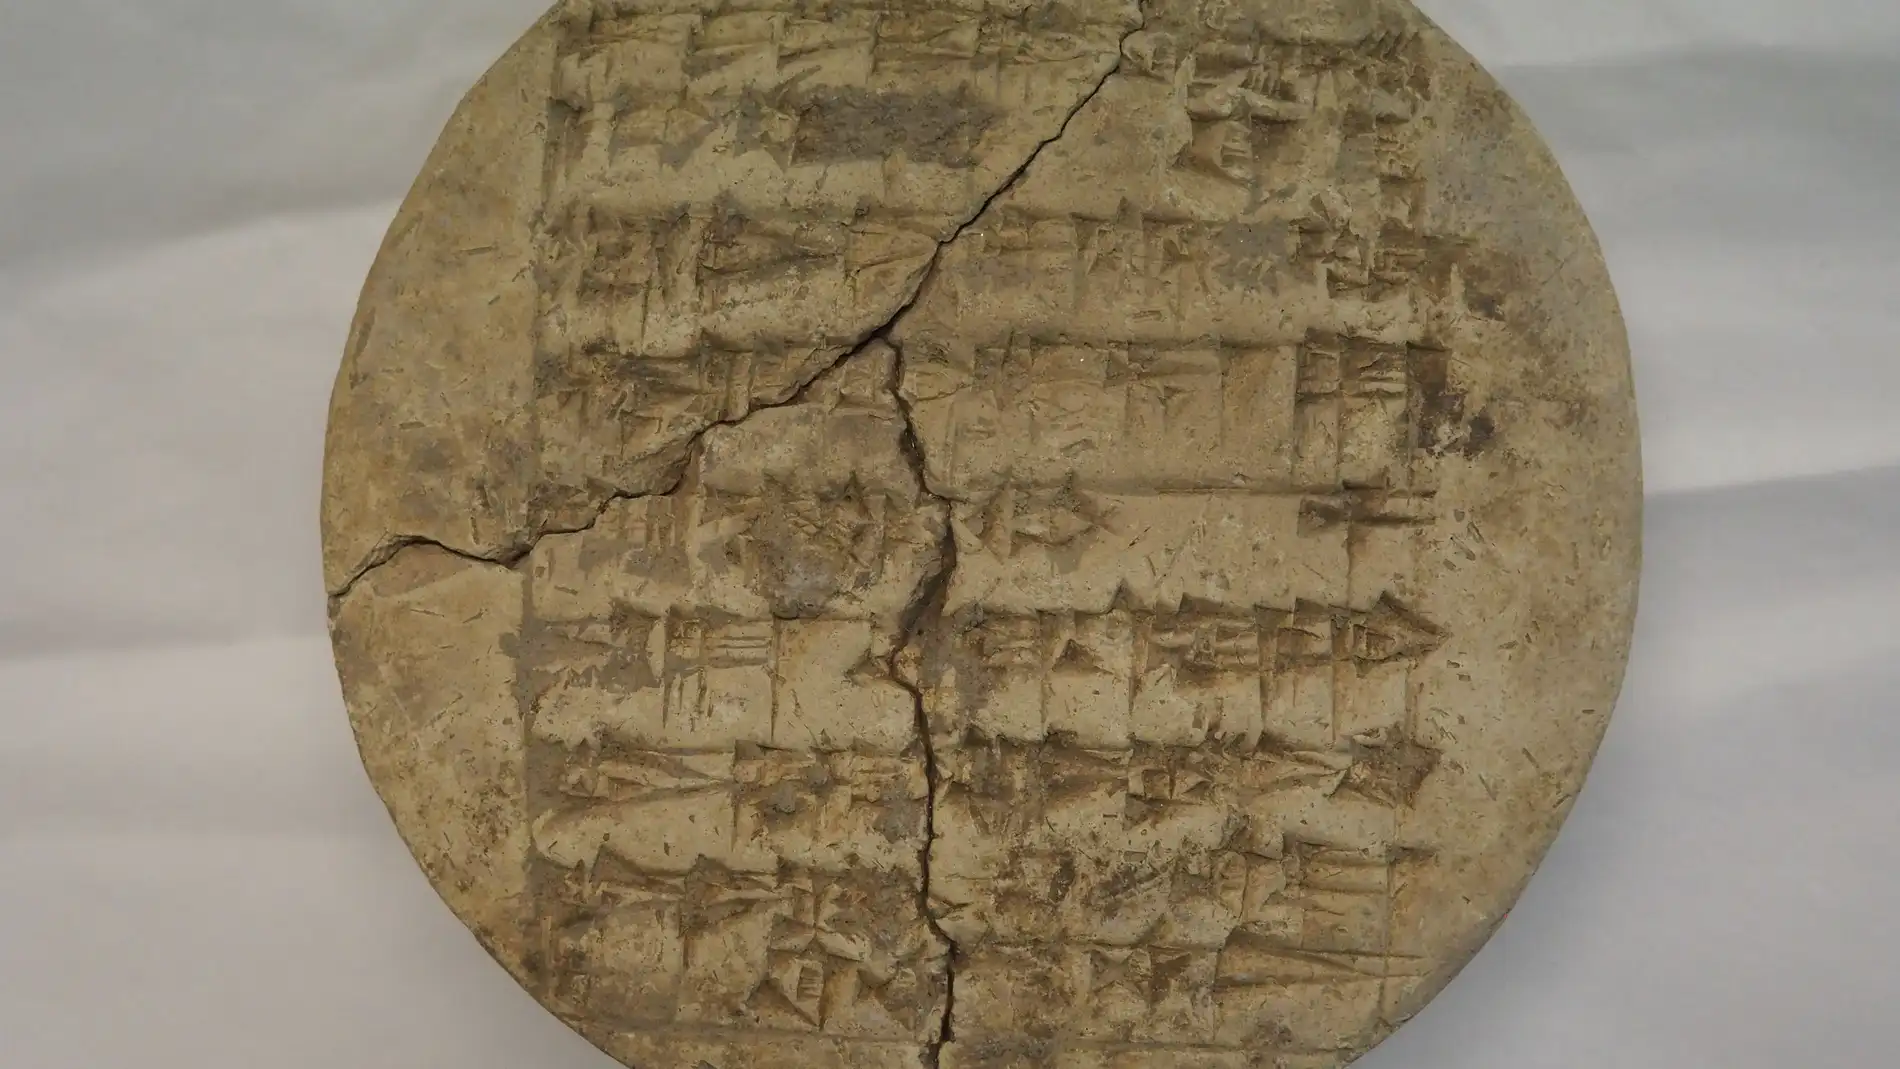 Descubren en un manuscrito del Museo Sefardi de Toledo una nueva inscripcion cuneiforme en lengua sumeria